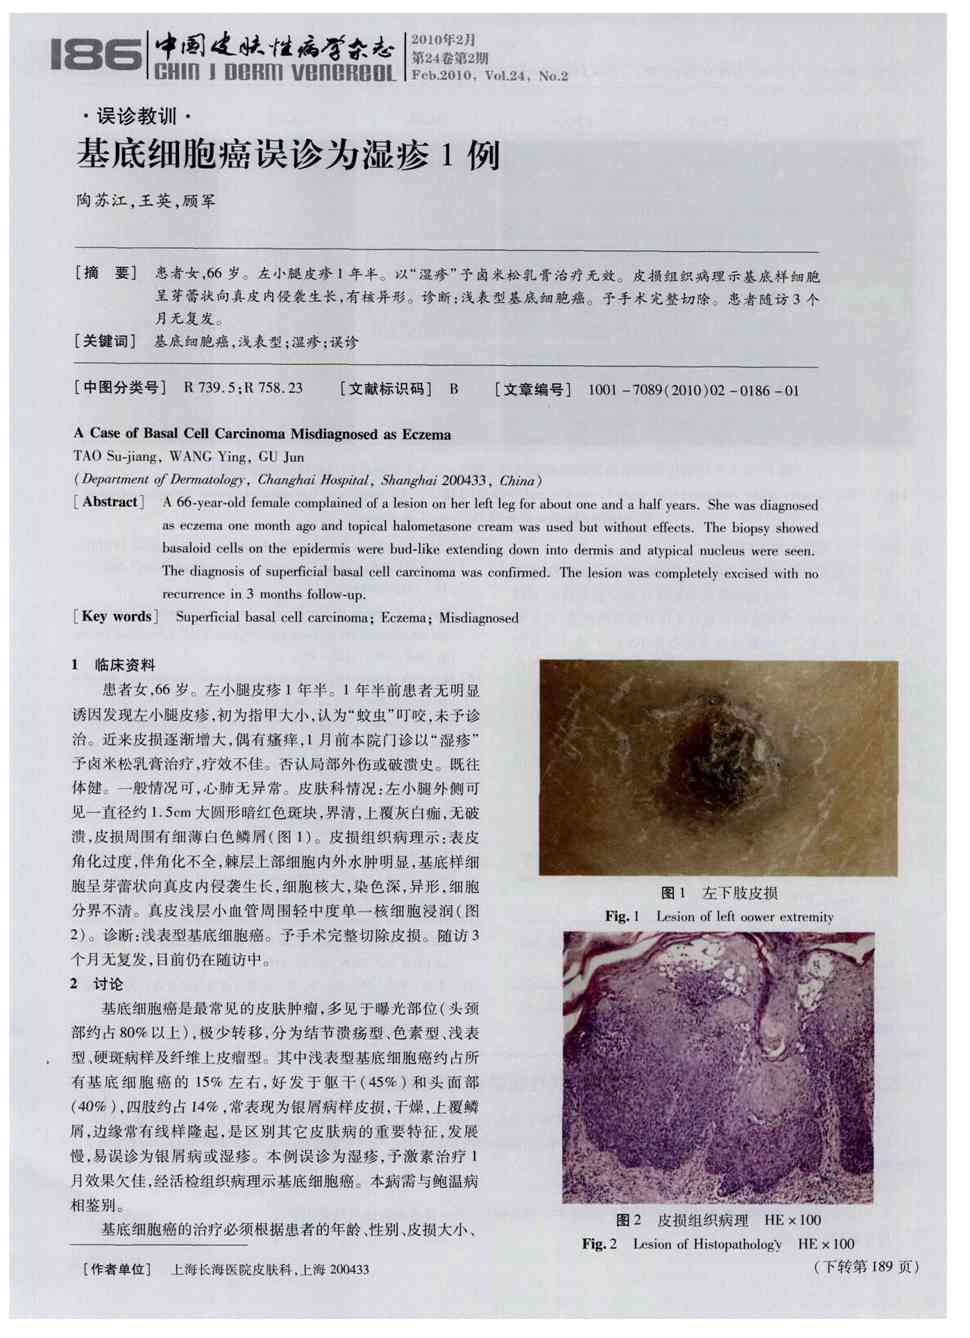 期刊基底细胞癌误诊为湿疹1例被引量:3     患者女,66岁.